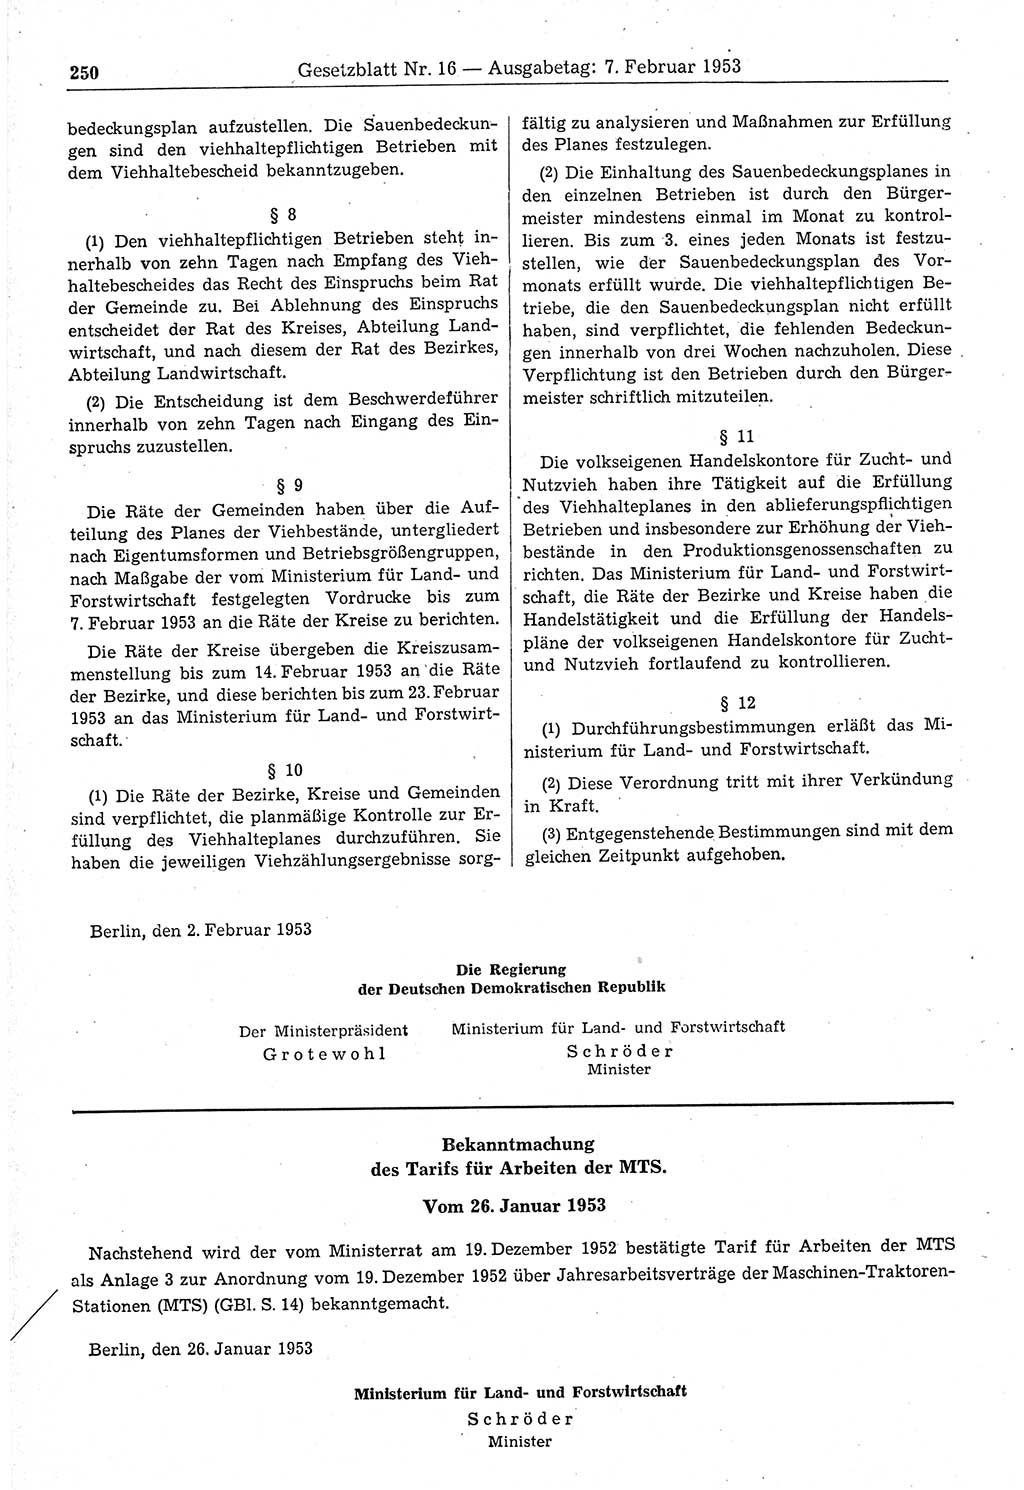 Gesetzblatt (GBl.) der Deutschen Demokratischen Republik (DDR) 1953, Seite 250 (GBl. DDR 1953, S. 250)